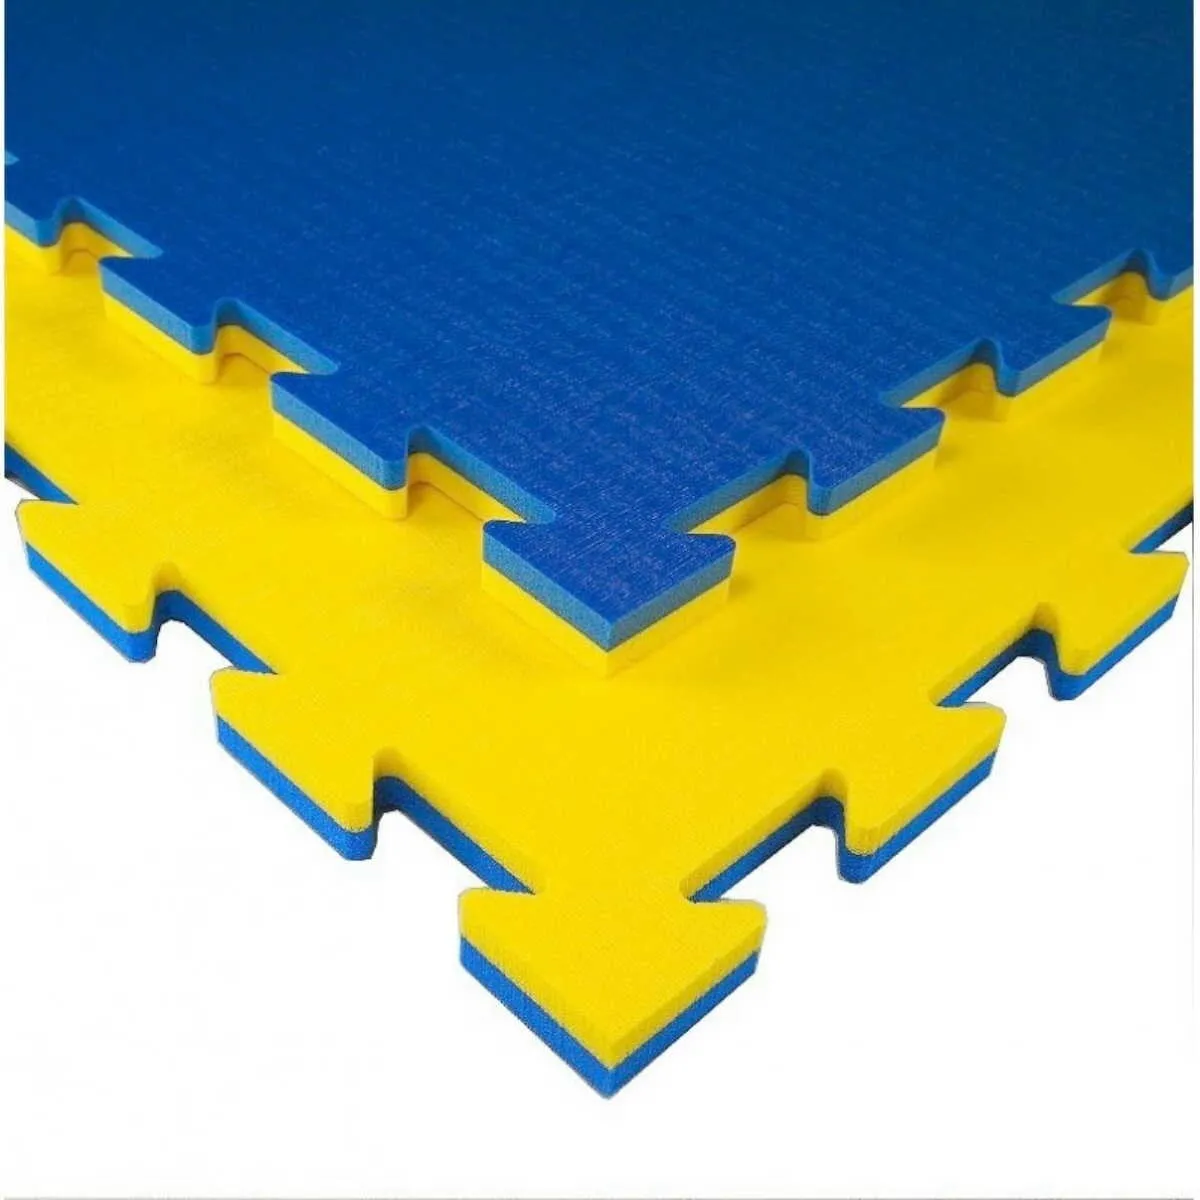 Tatami K20L mat yellow/blue 100 cm x 100 cm x 2 cm